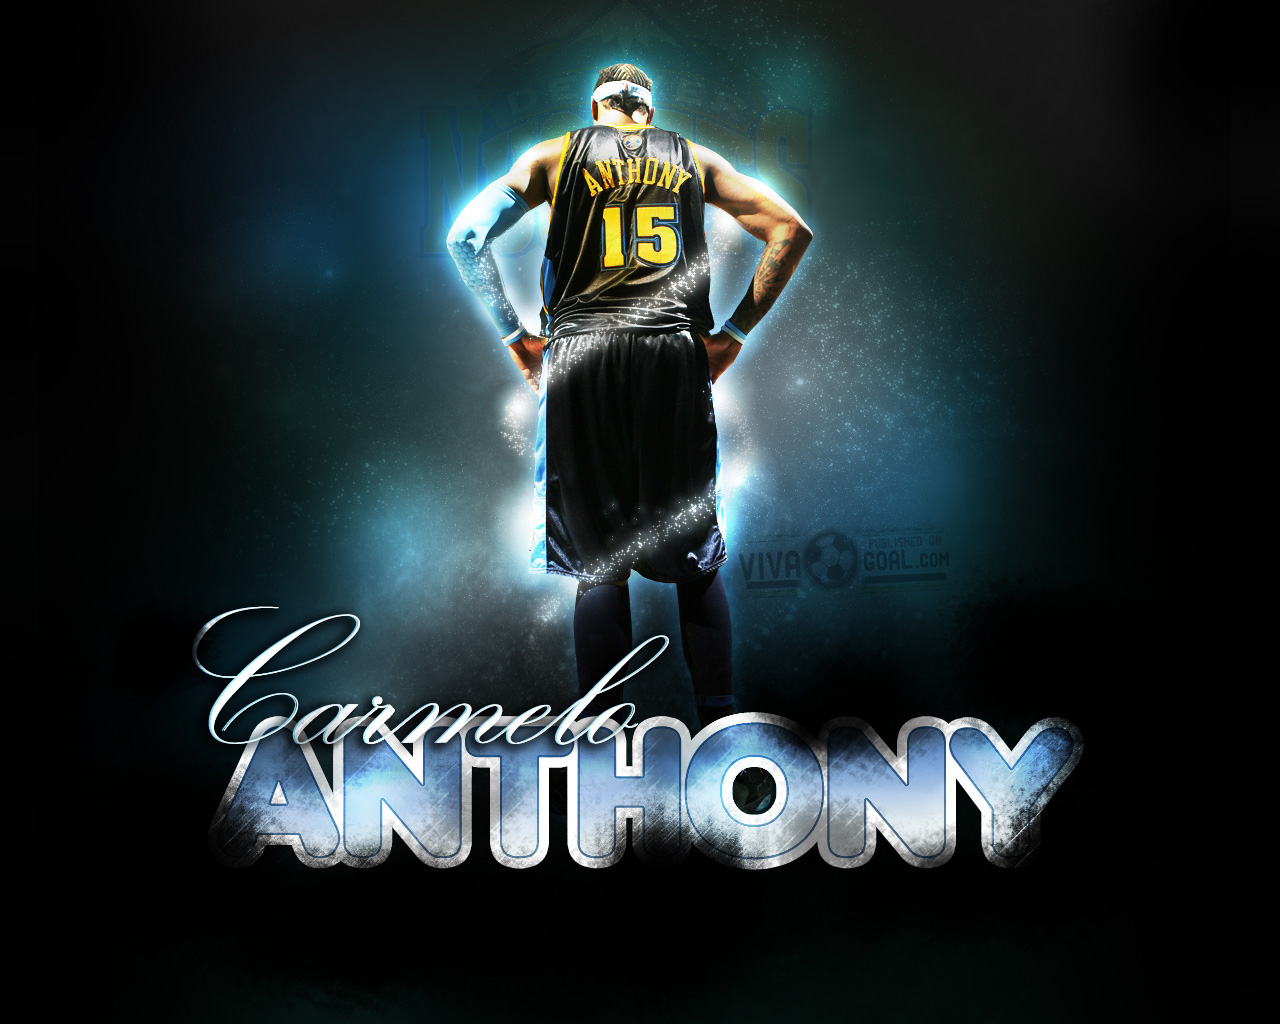 Carmelo Anthony wallpaper  Carmelo anthony wallpaper, Carmelo anthony, Nba  basketball art